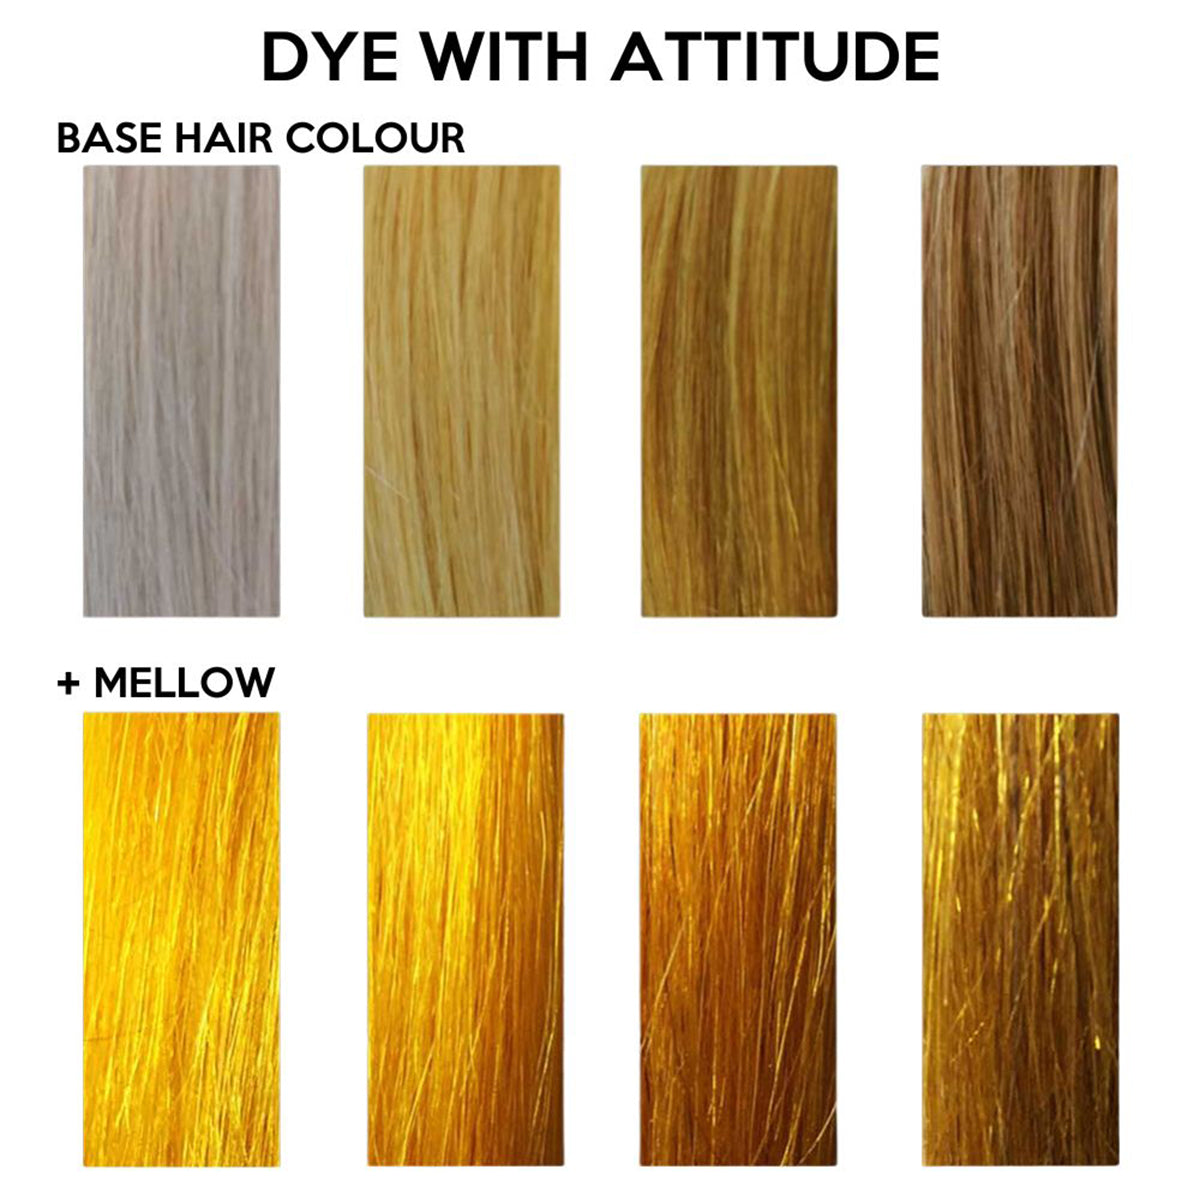 MELLOW YELLOW - Farba do włosów Attitude - 135ml